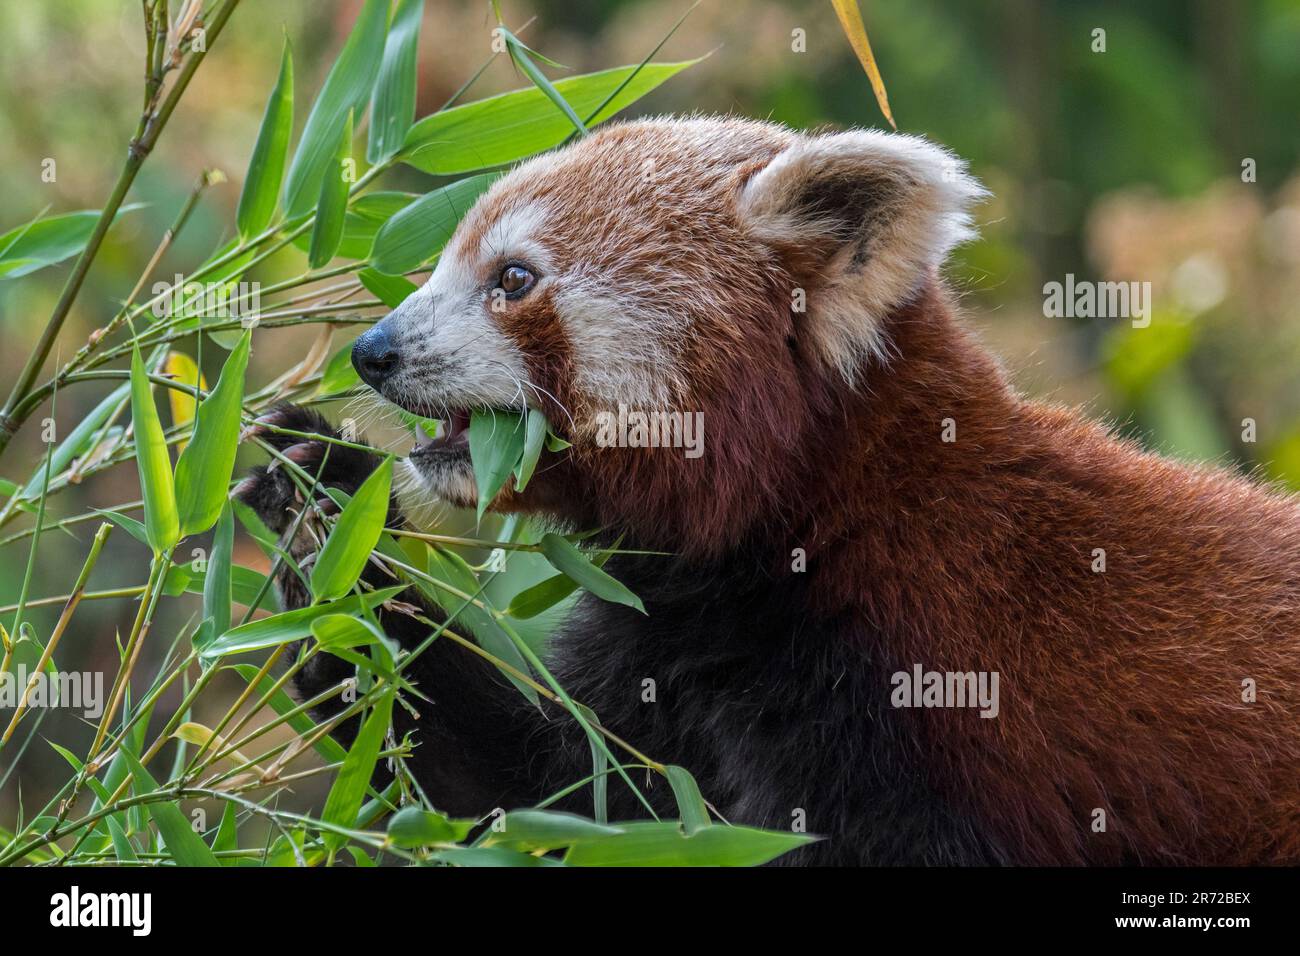 Panda rouge / panda de moindre importance (Ailurus fulgens), originaire de l'est de l'Himalaya et du sud-ouest de la Chine, en mangeant du bambou Banque D'Images